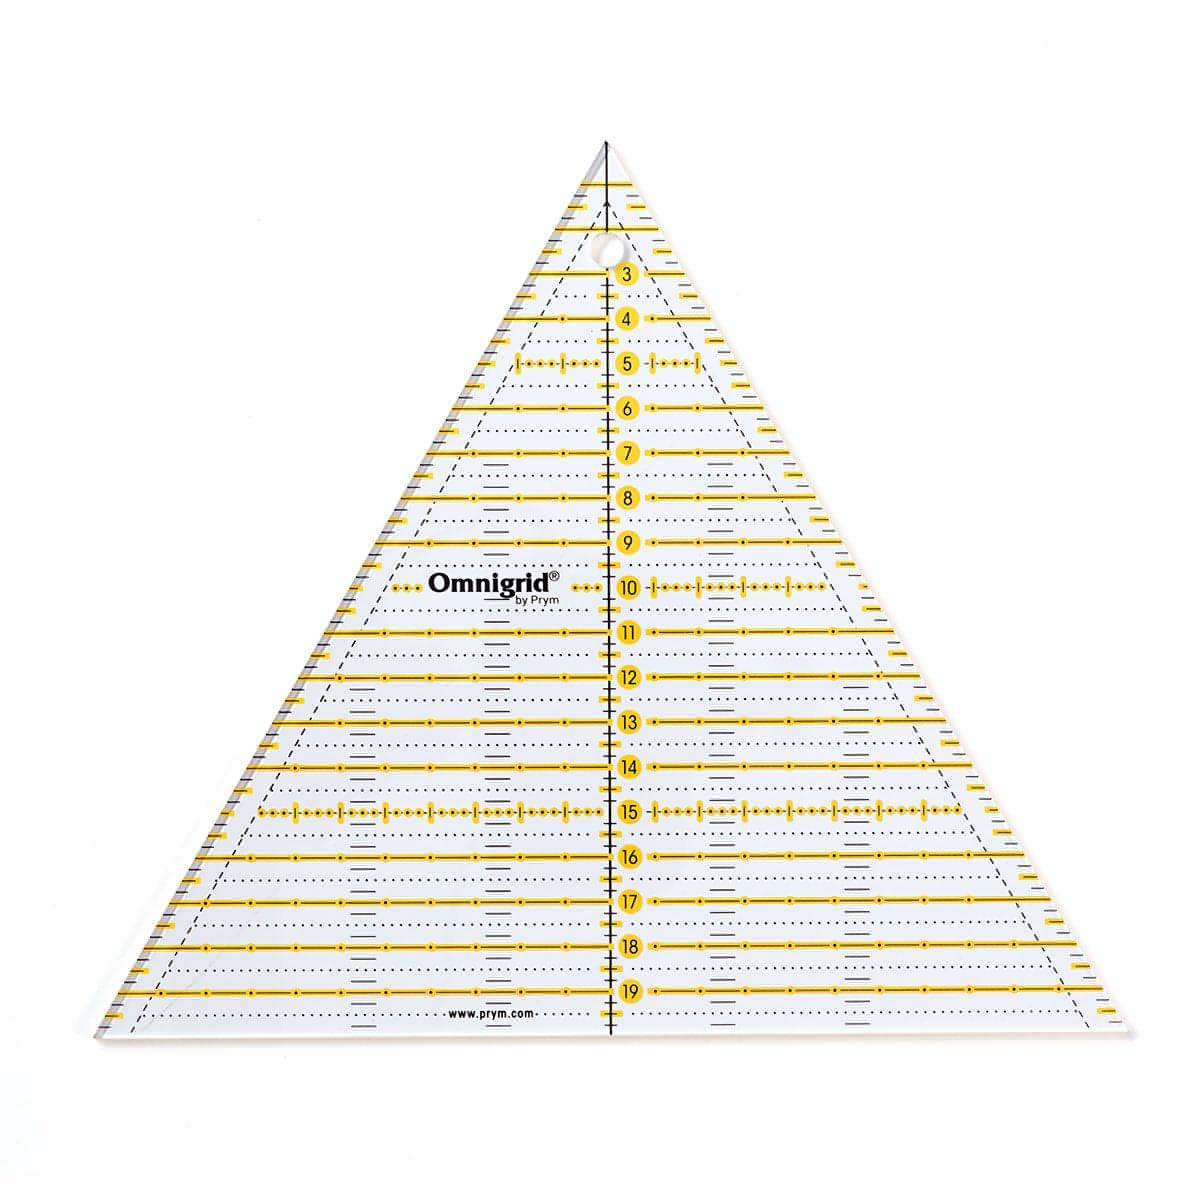 Prym Omnigrid Triangle Multi Ruler - 60 Degree / 20cm